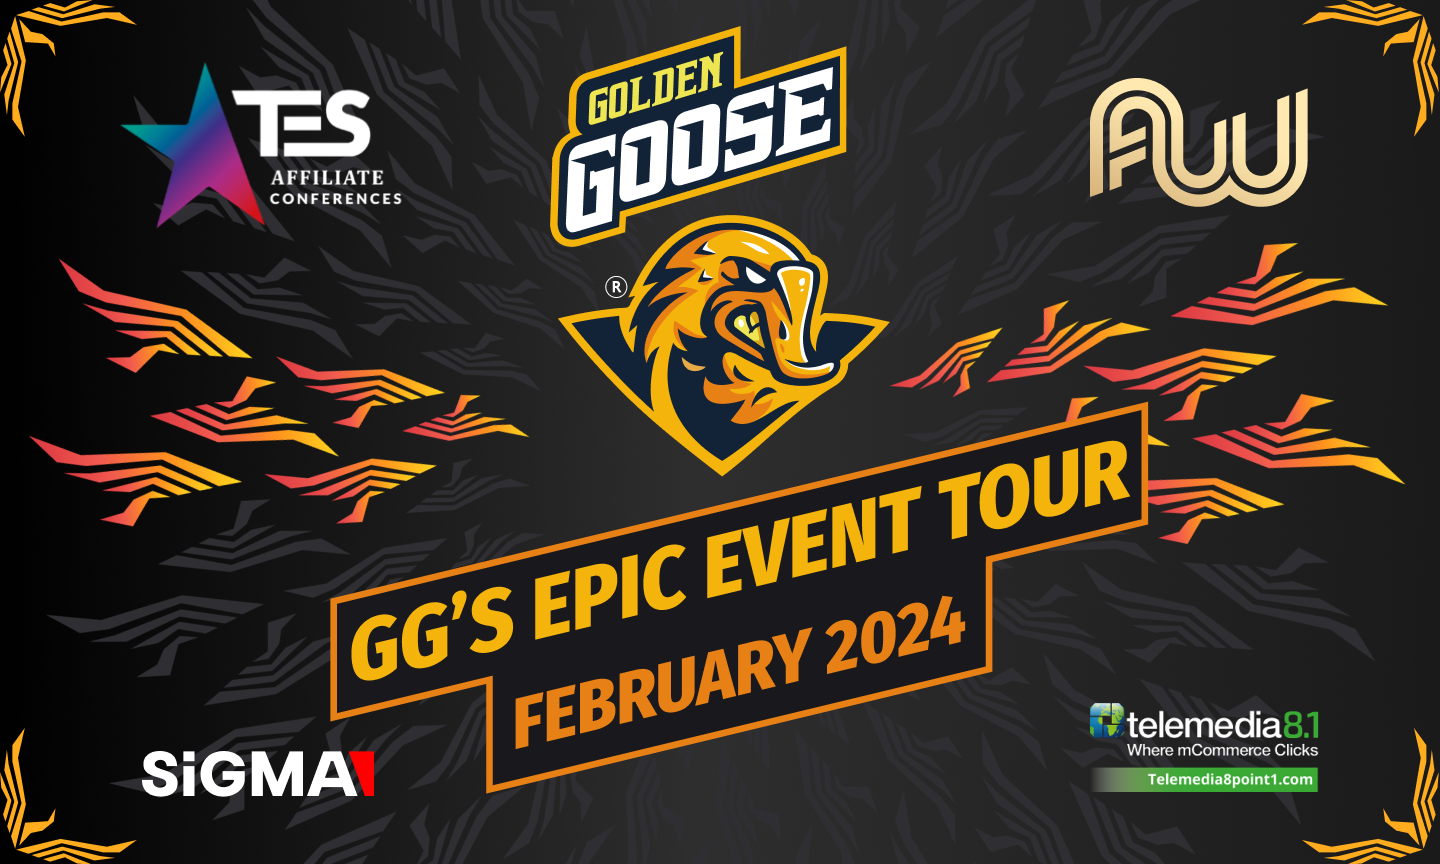 Golden Goose’s Epic Event Tour 2024